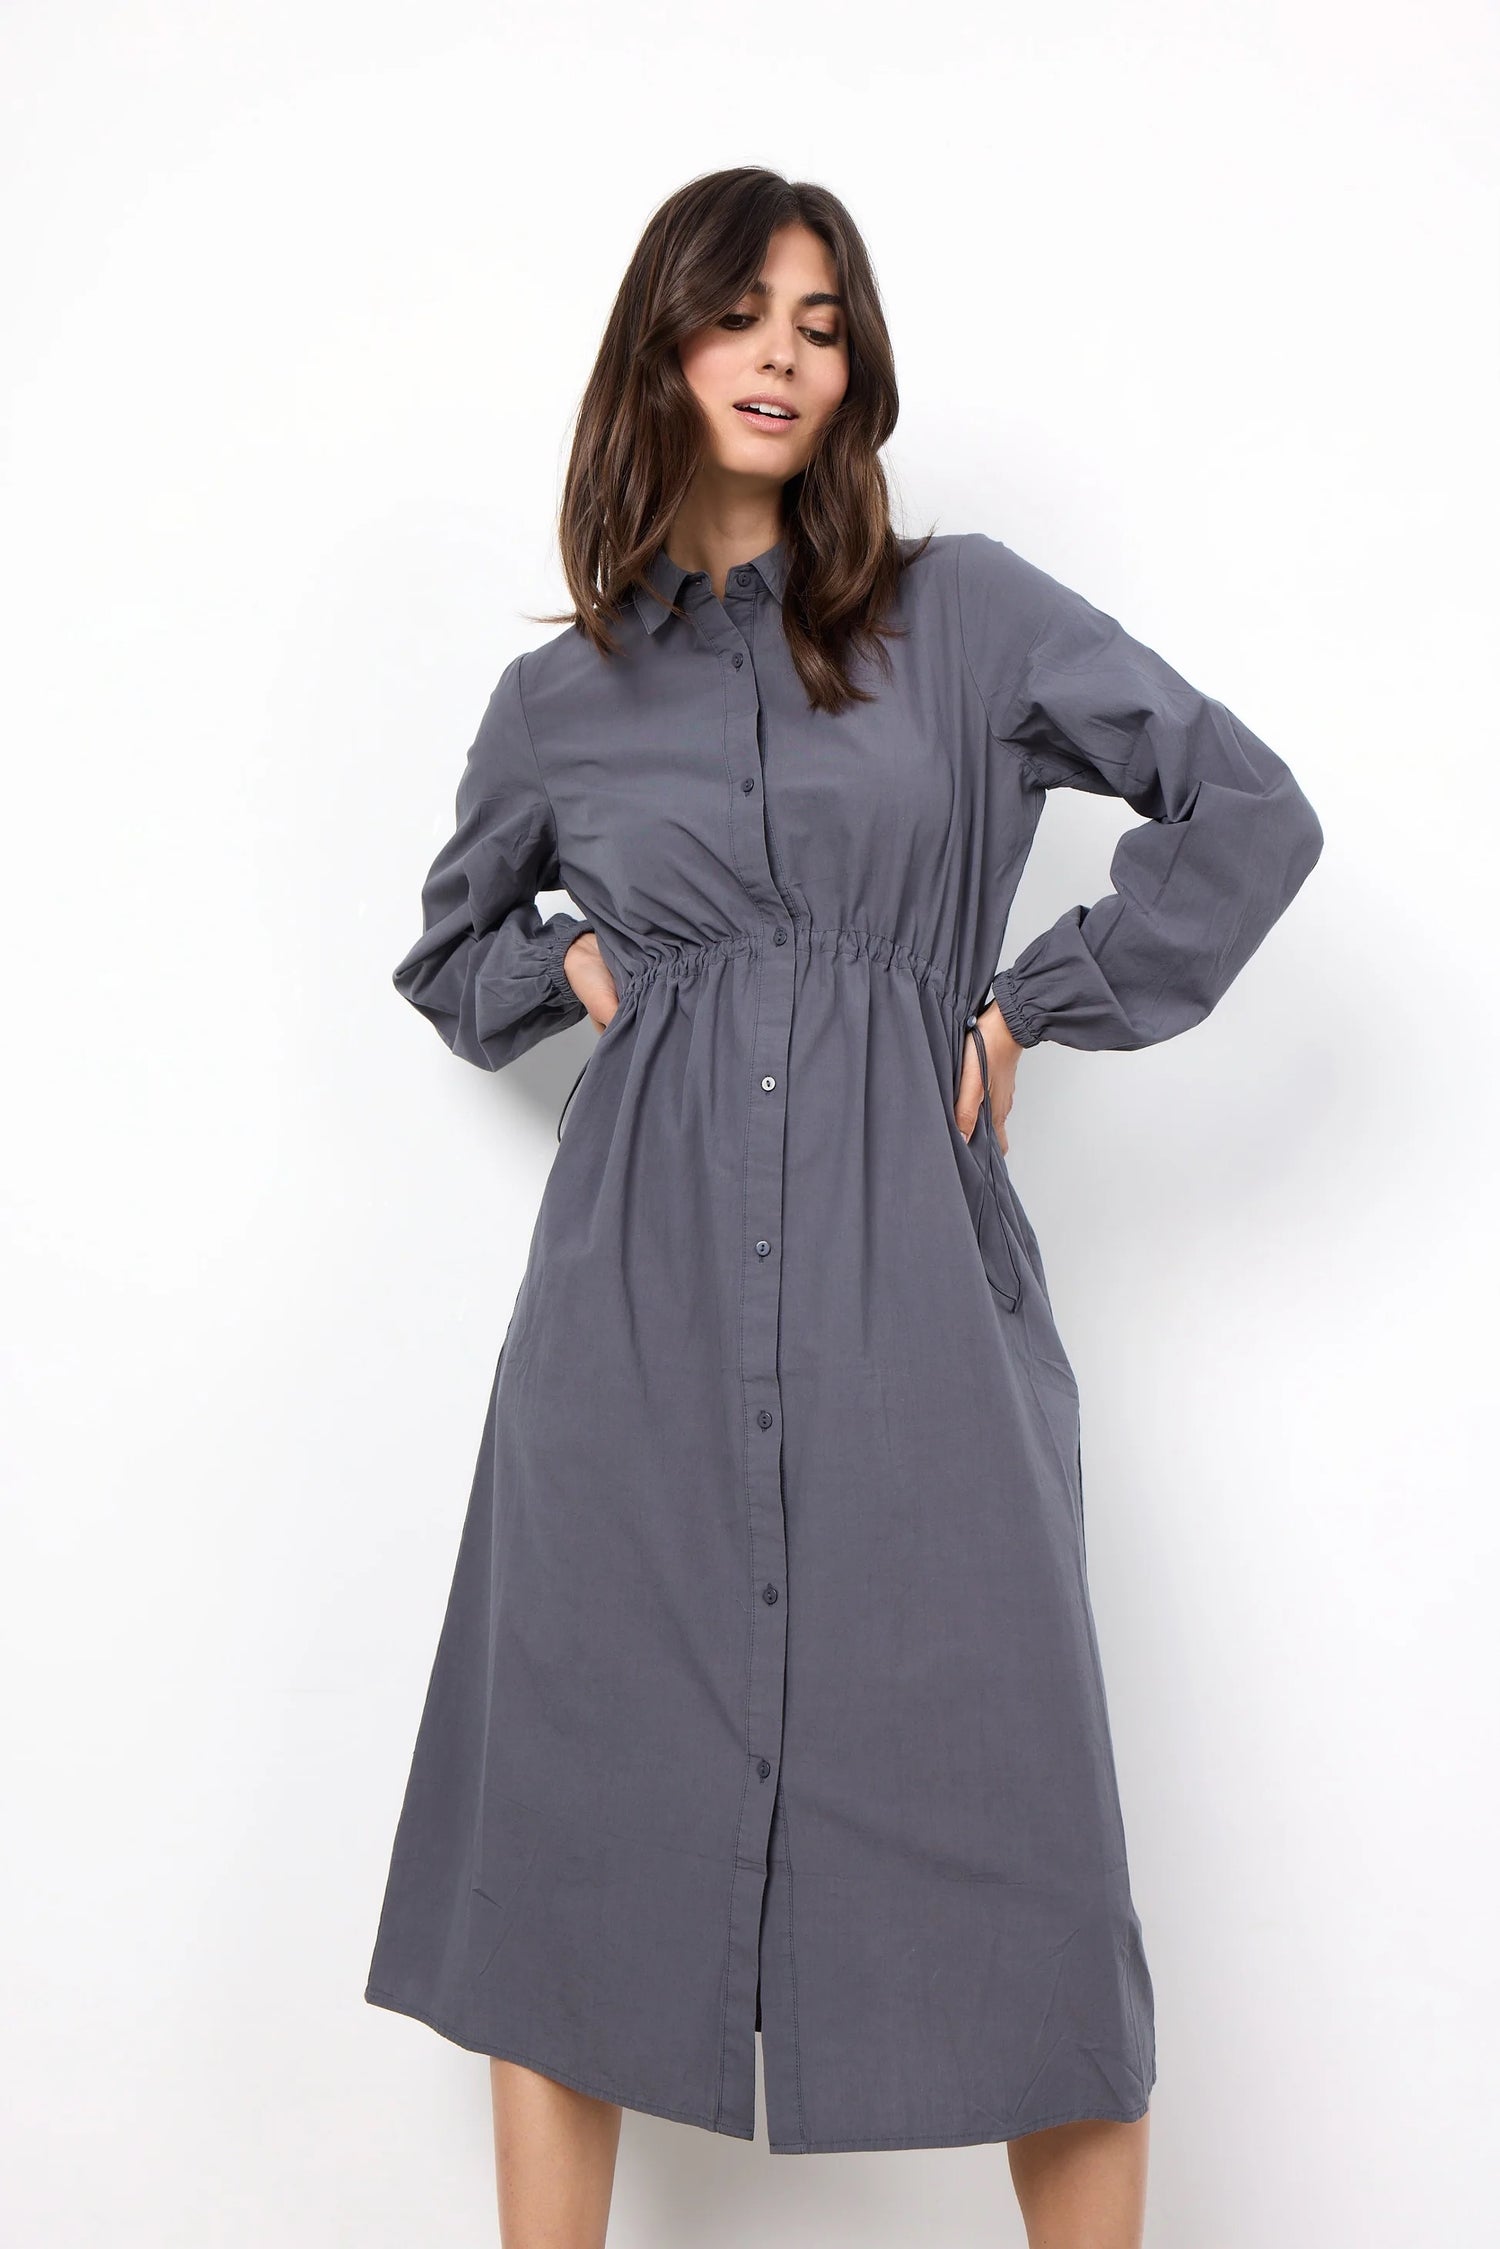 Dress SC Milly 4 - Slate Grey